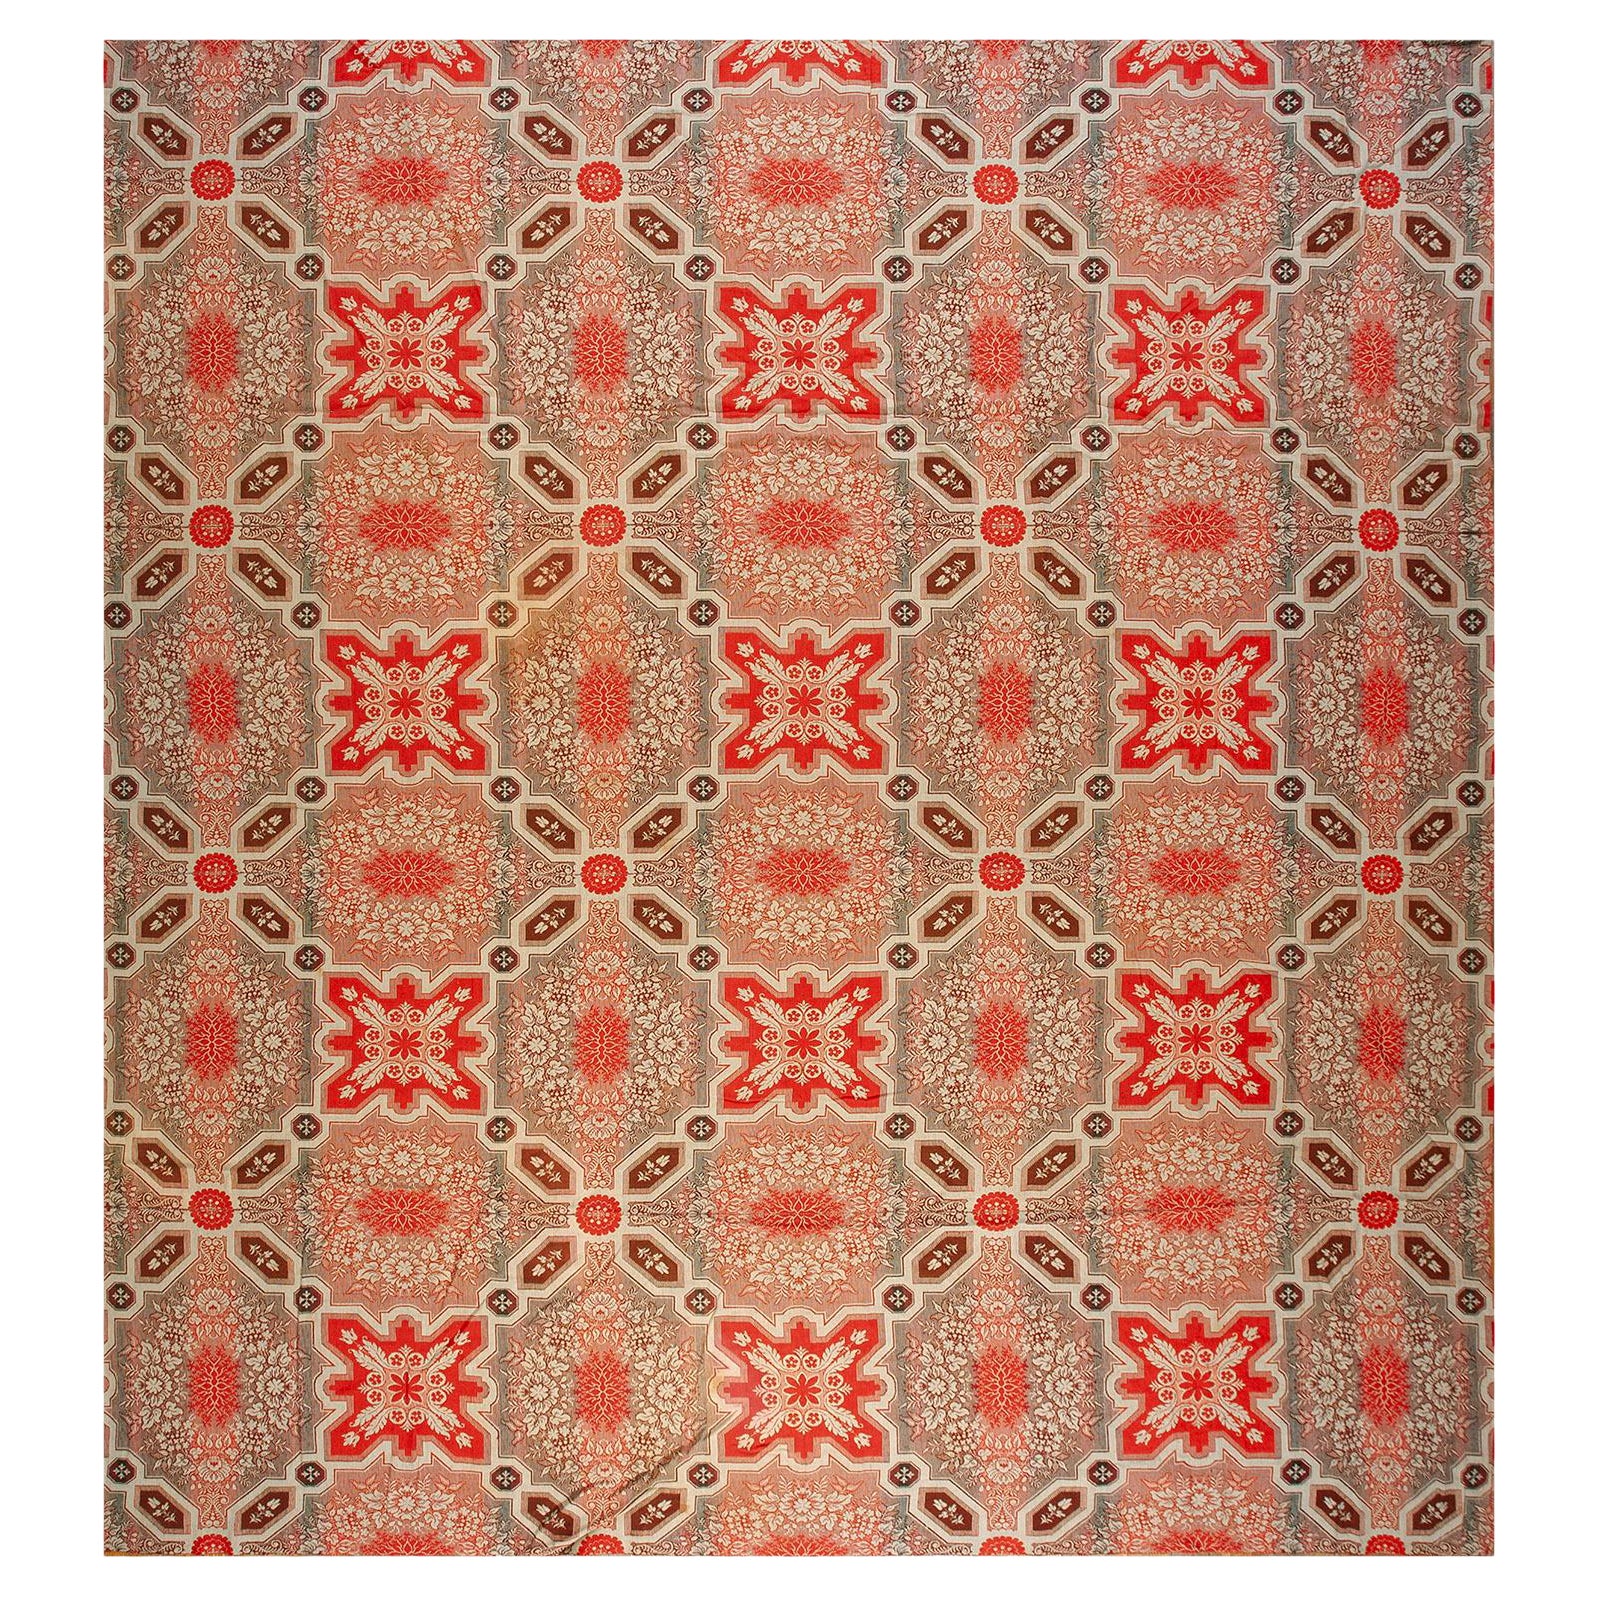 Amerikanischer Ingrain-Teppich aus der Mitte des 19. Jahrhunderts ( 3,66 m x 4,66 m)  - 381 x 406 cm ) im Angebot